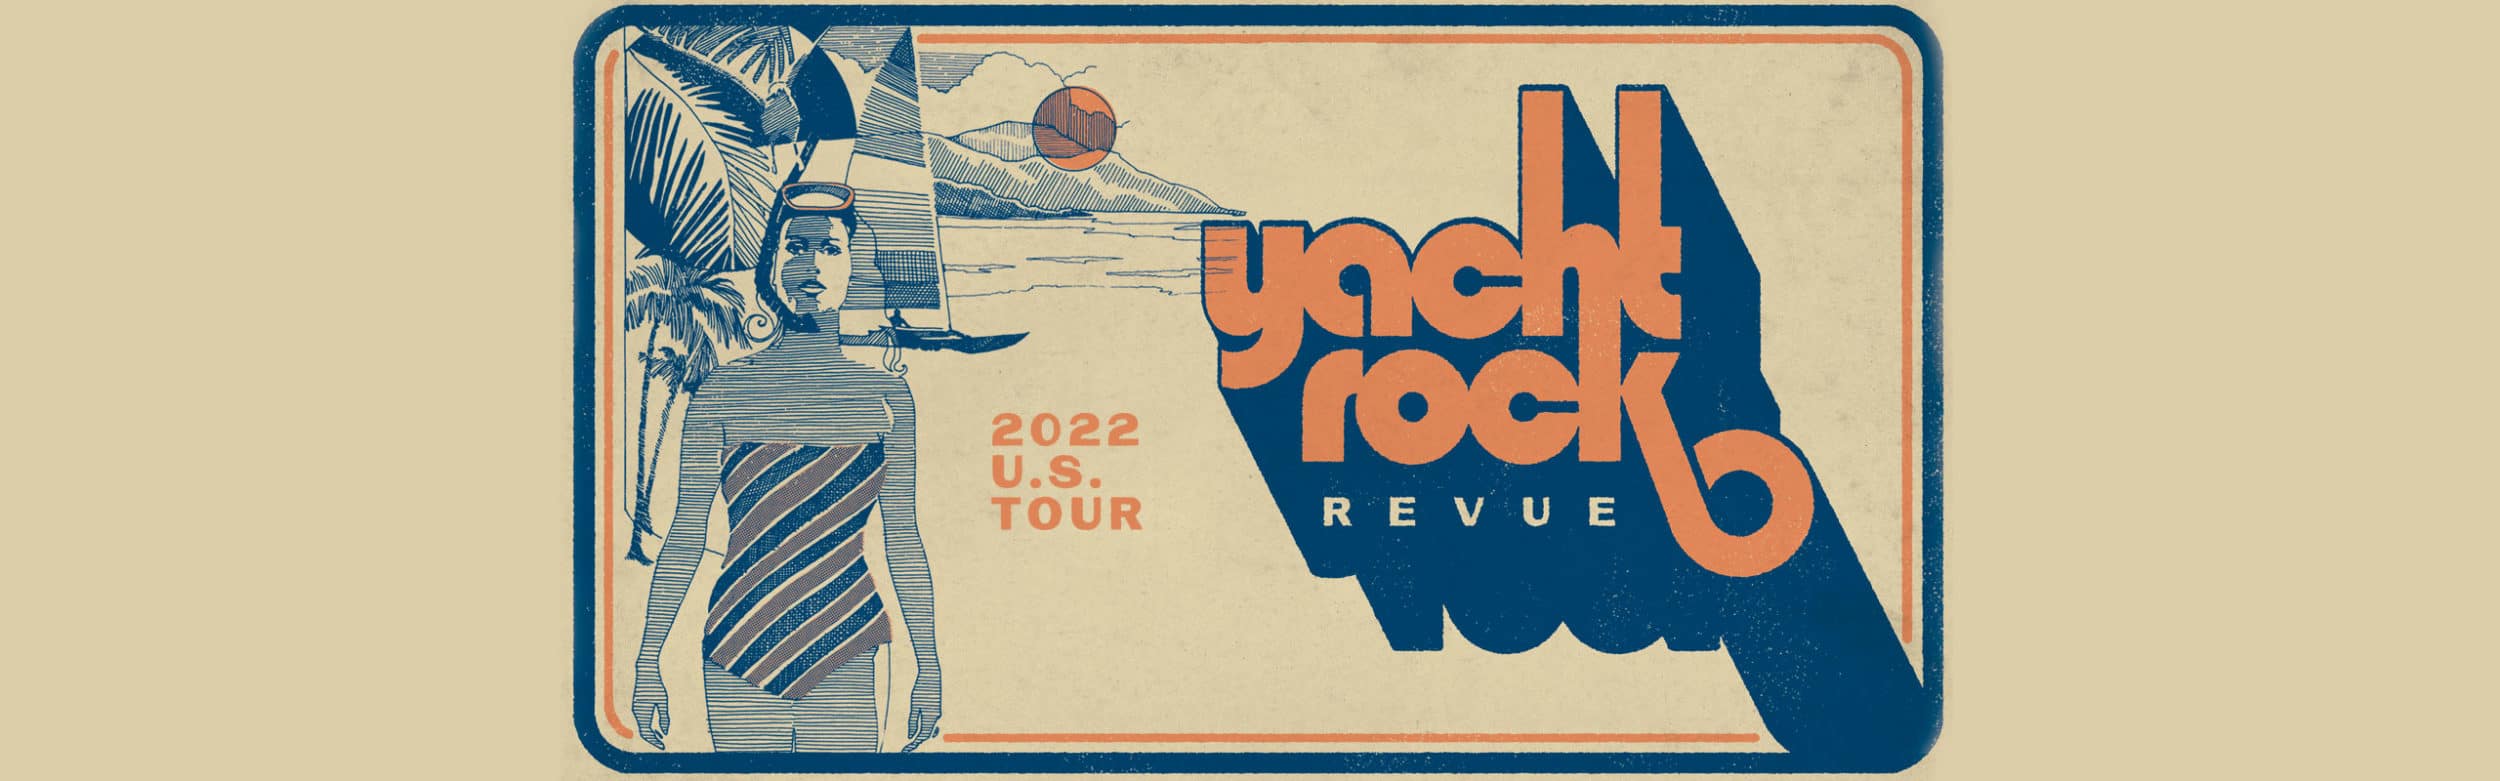 yacht rock revue pier 17